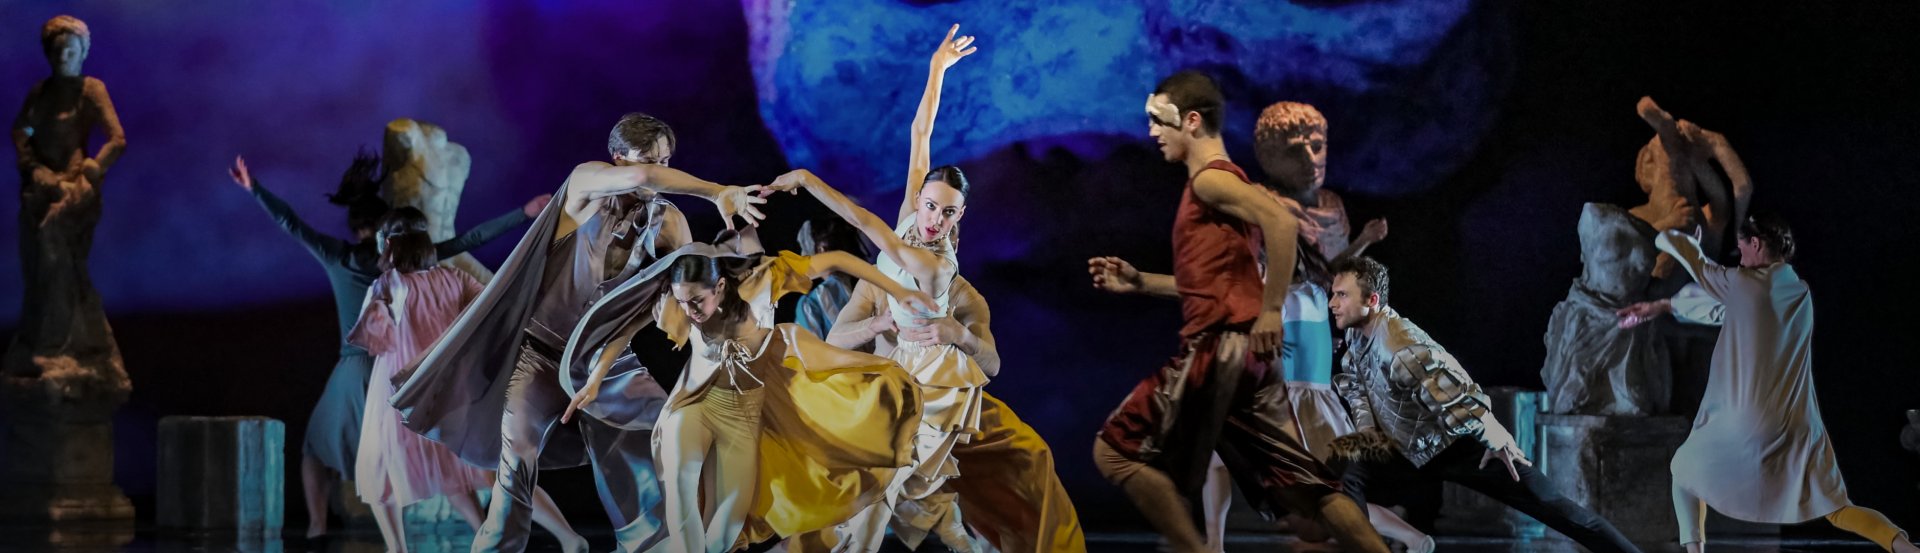 Rijekai Balett: Rómeó és Júlia című előadás kiemelt képe a Pécsi Nemzeti Színházból